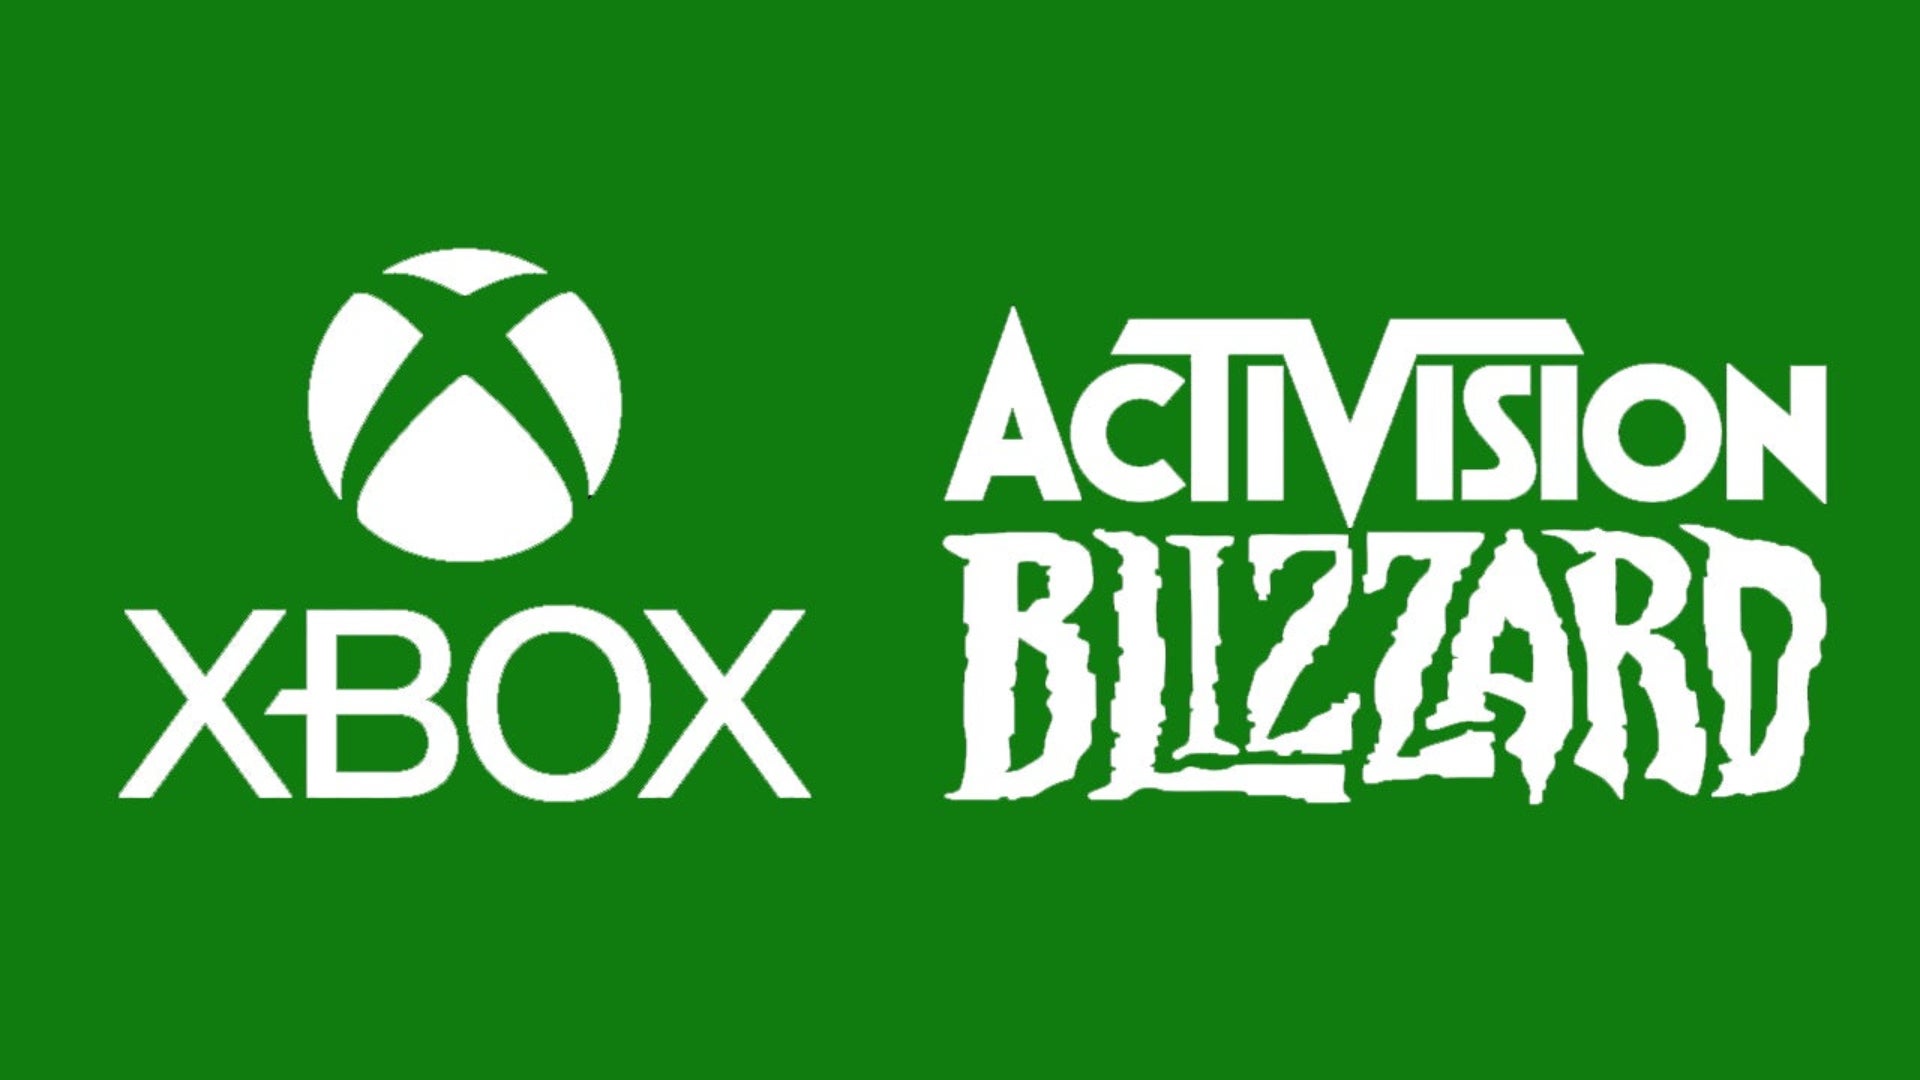 Microsoft espera se dé la concreción de la compra de Activision Blizzard